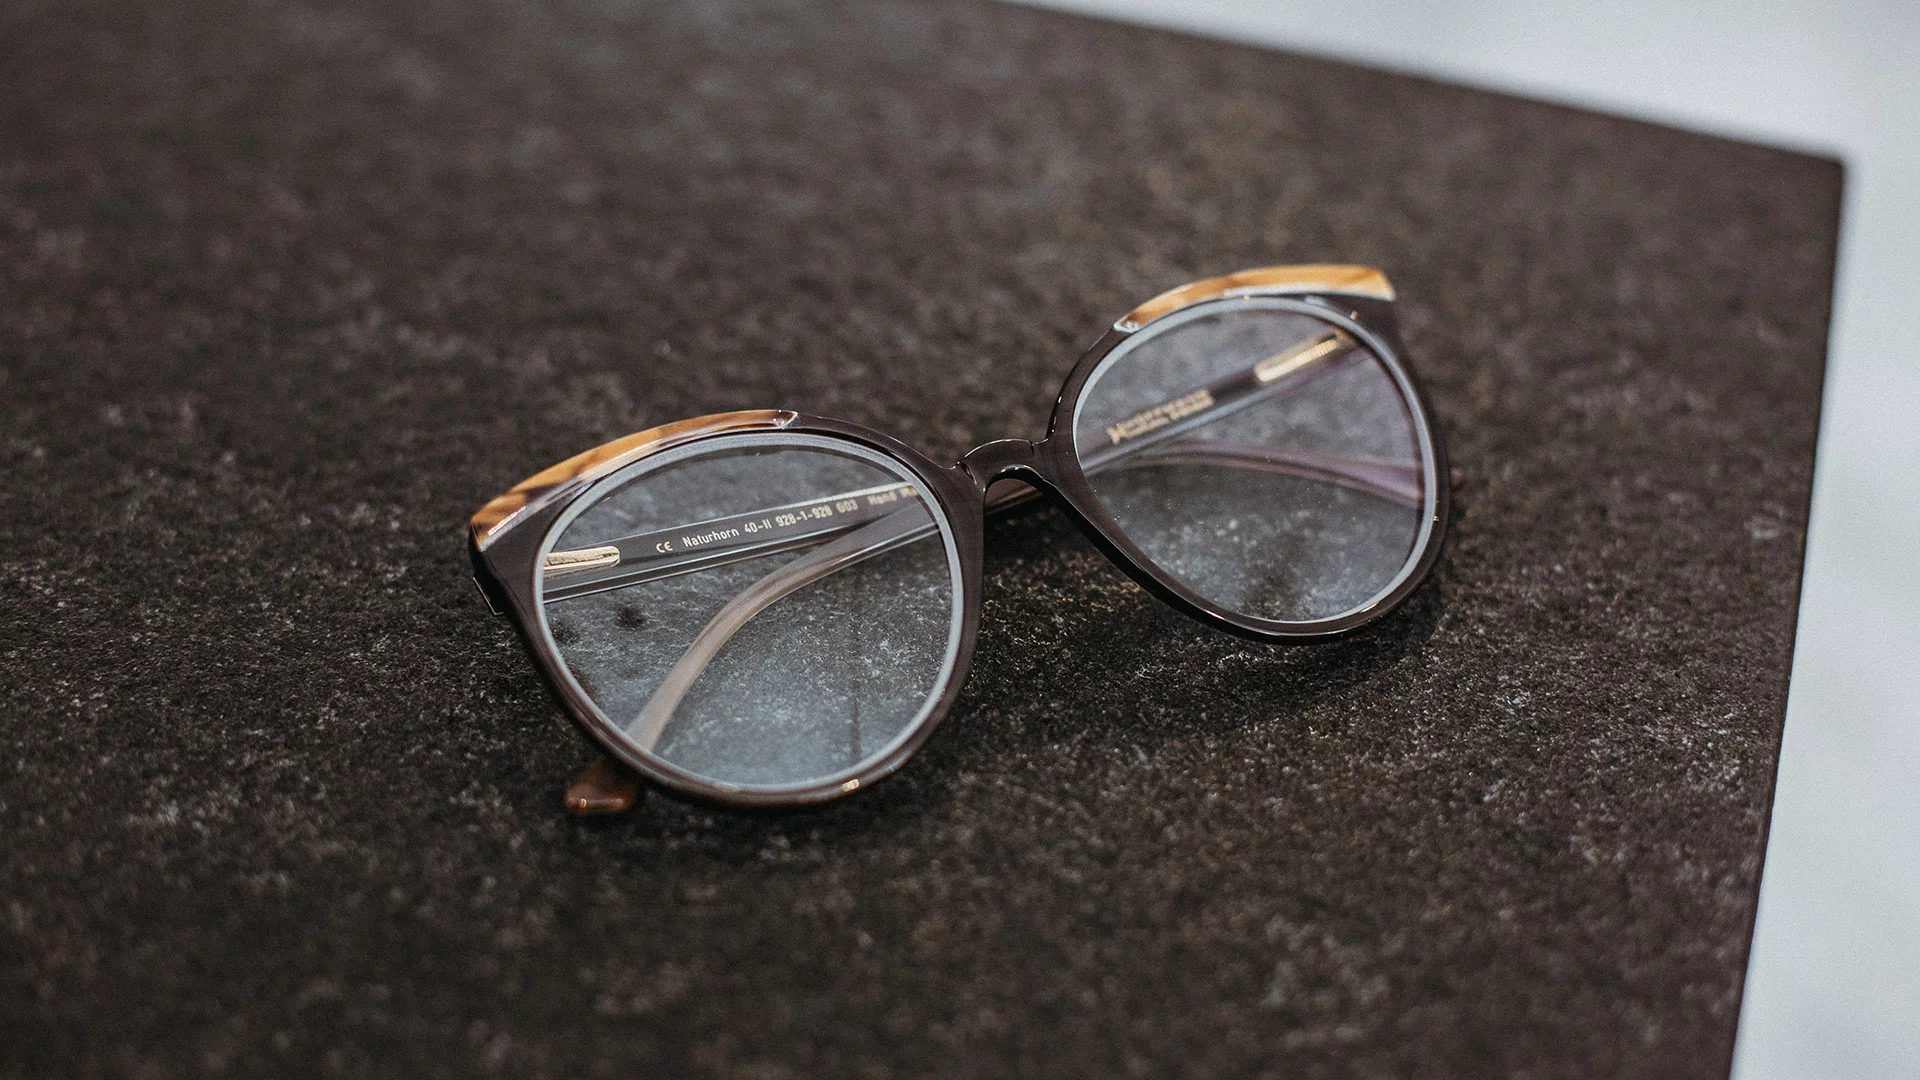 Braune Naturhornbrille mit hellen Akzenten von Hoffmann Natural Eyewear, die auf einem braunen Untergrund liegt.